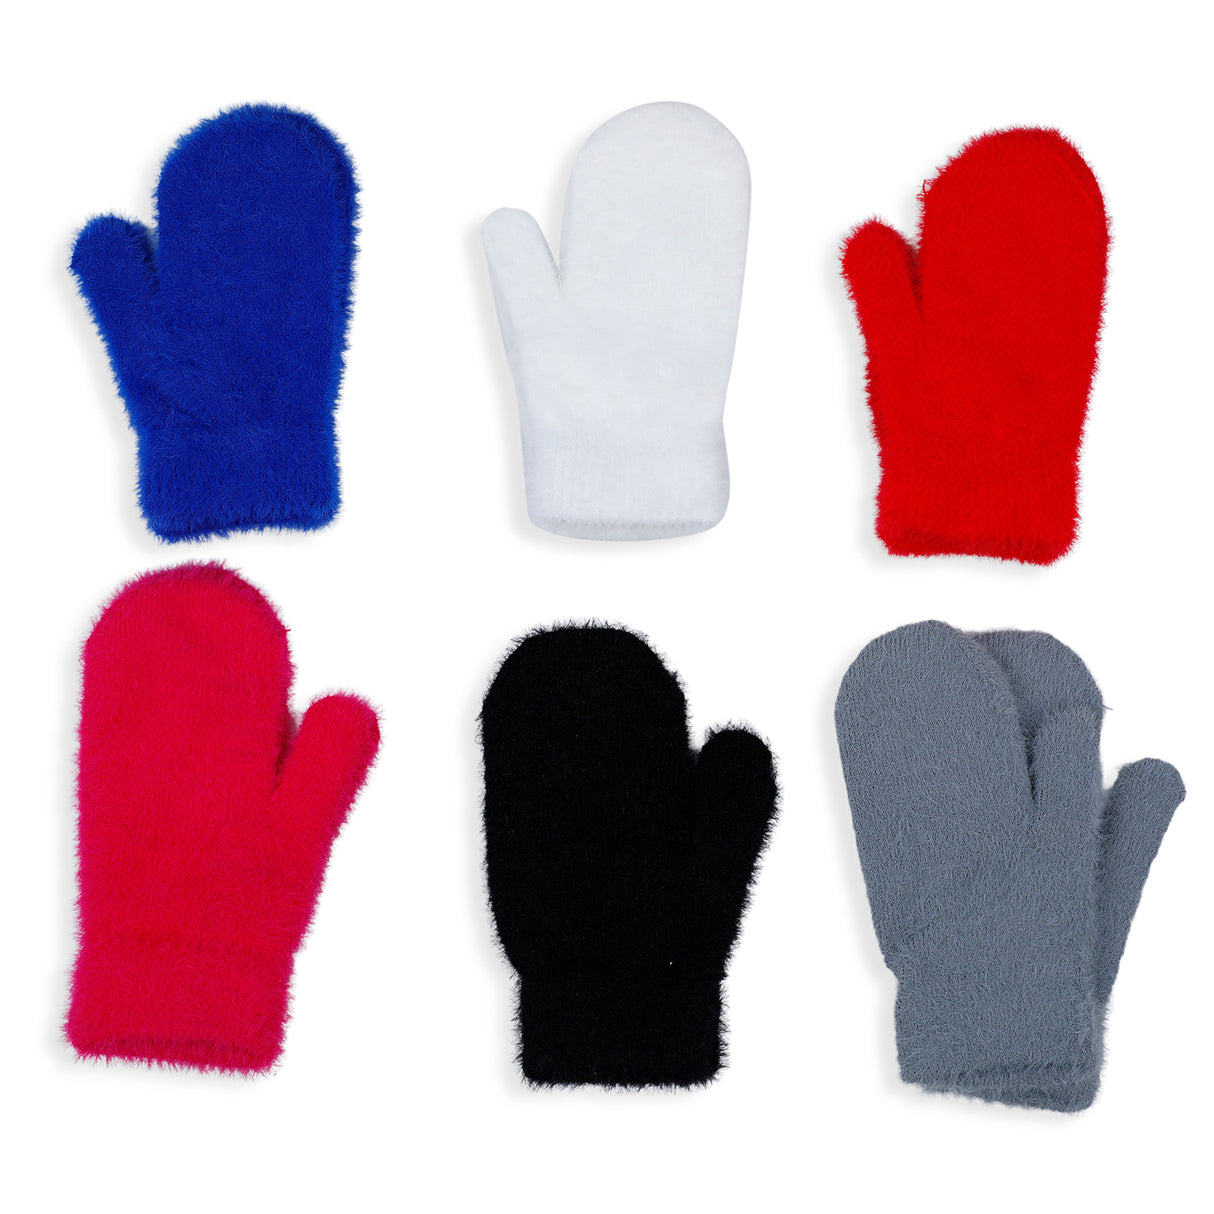 Plain Soft Woollen Winter Warm Hand Gloves